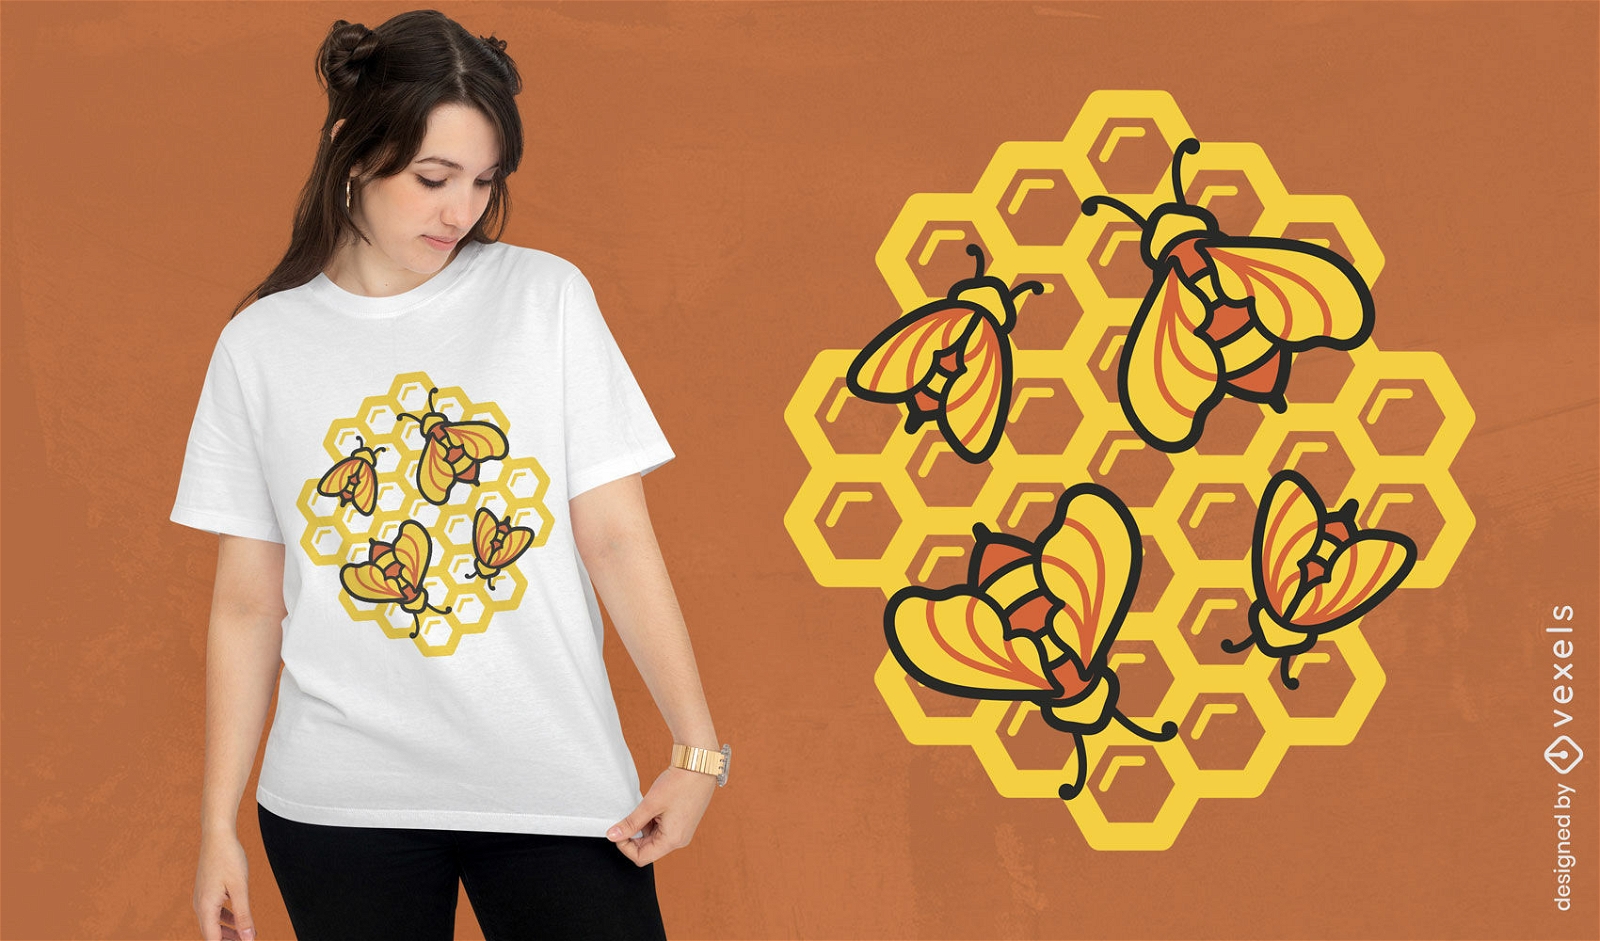 Bienentiere auf Bienenstock-T-Shirt-Design